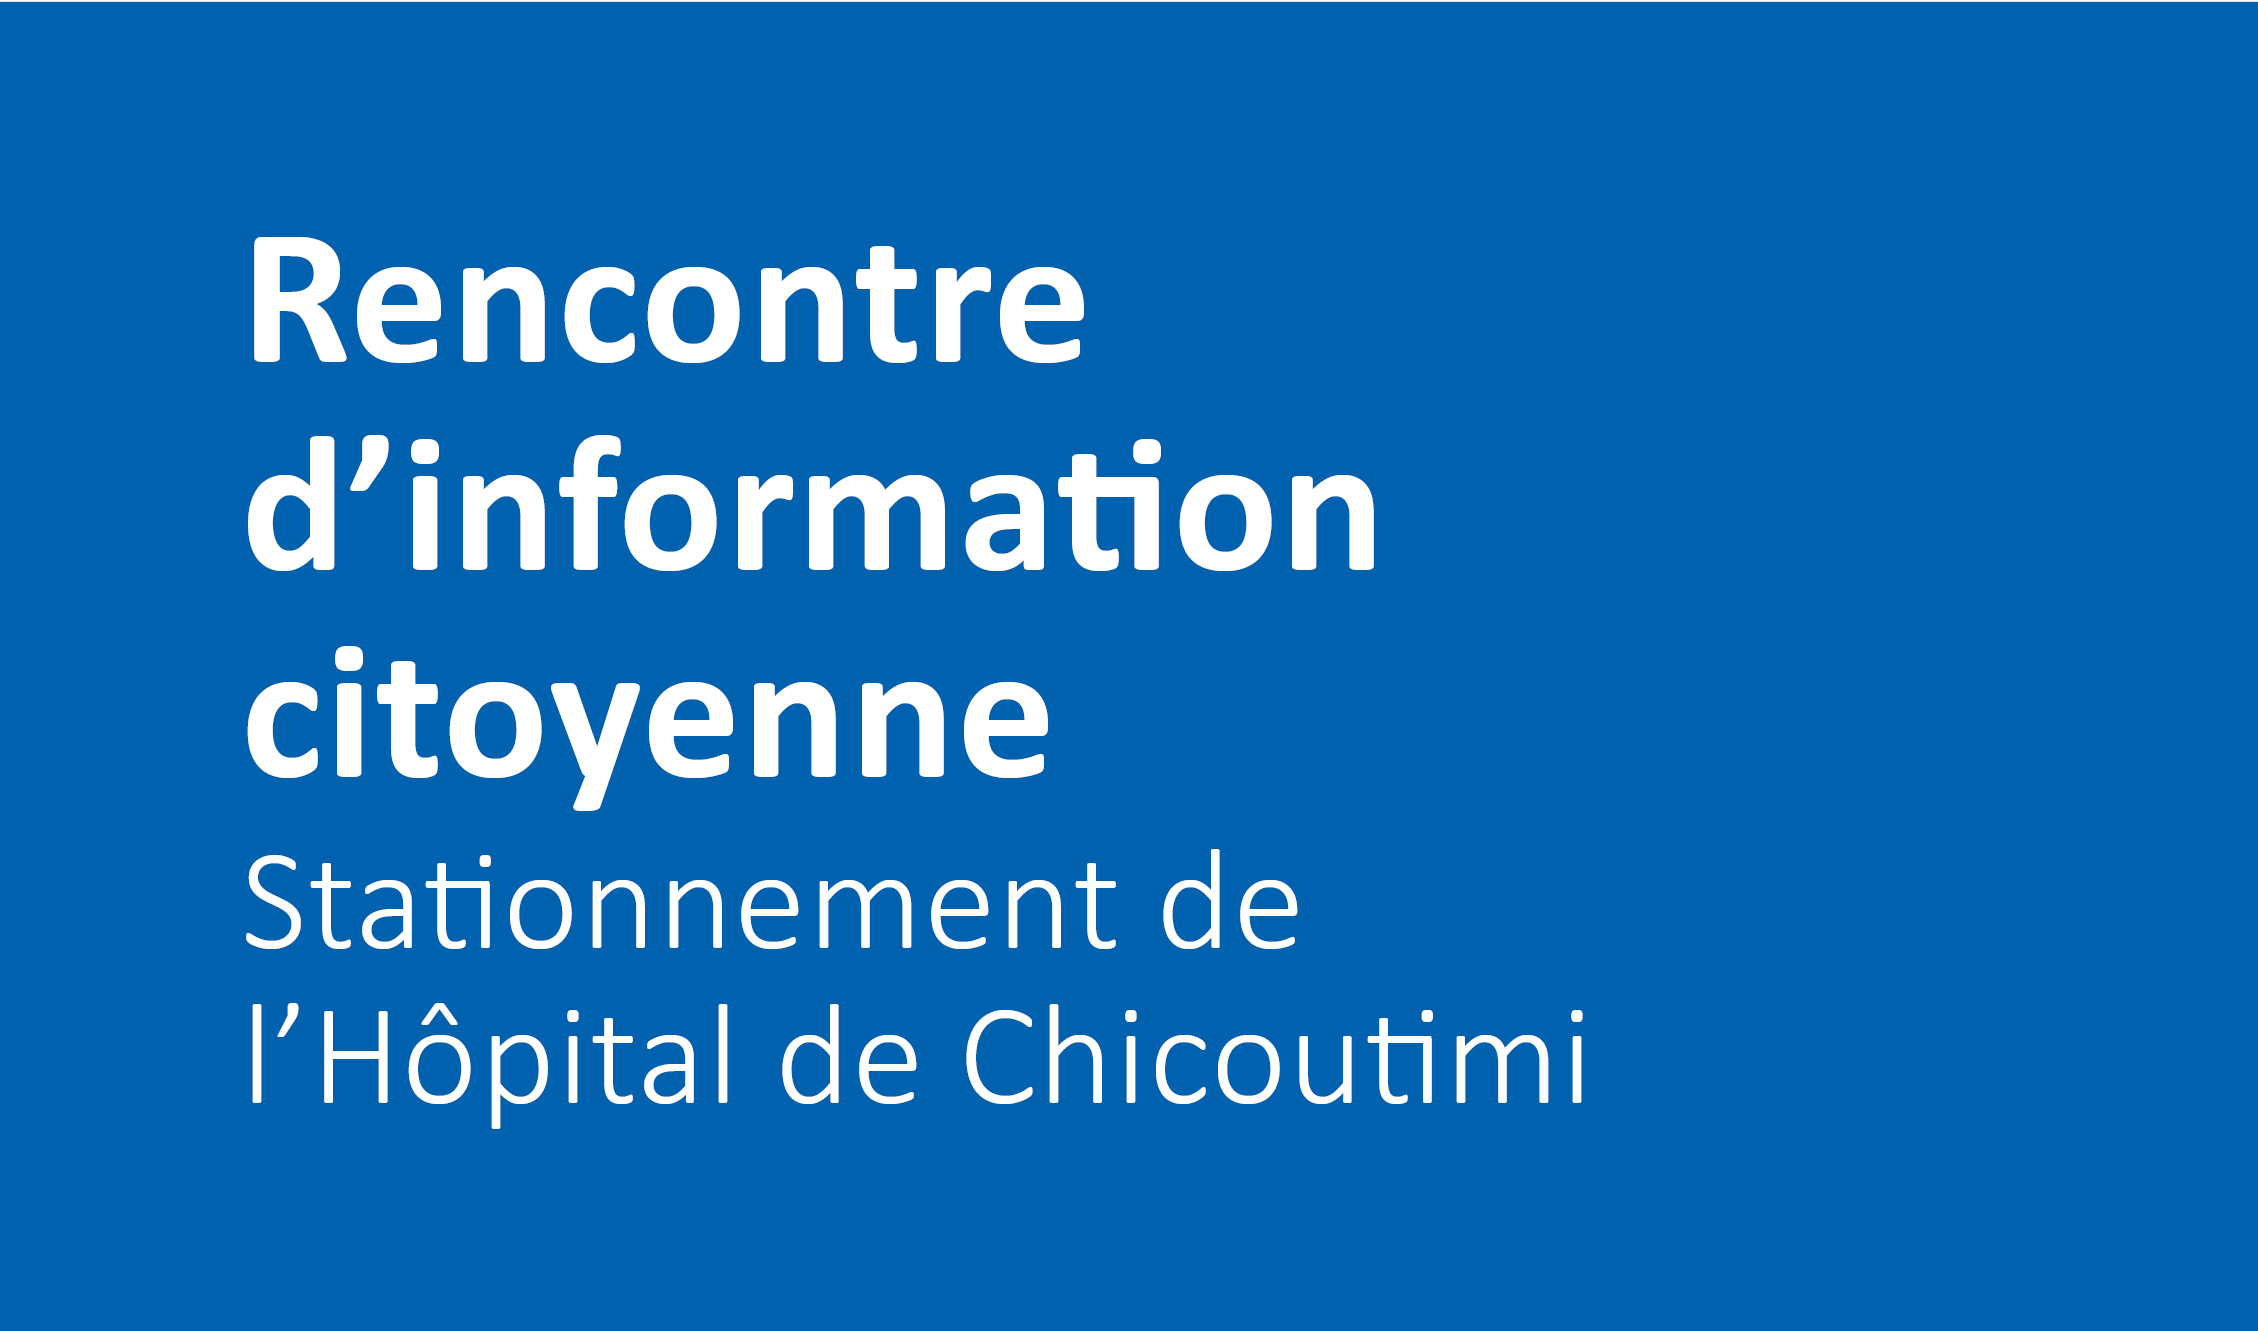 Rencontre citoyenne – Stationnement de l’Hôpital de Chicoutimi (étape préliminaire du projet du bloc opératoire)